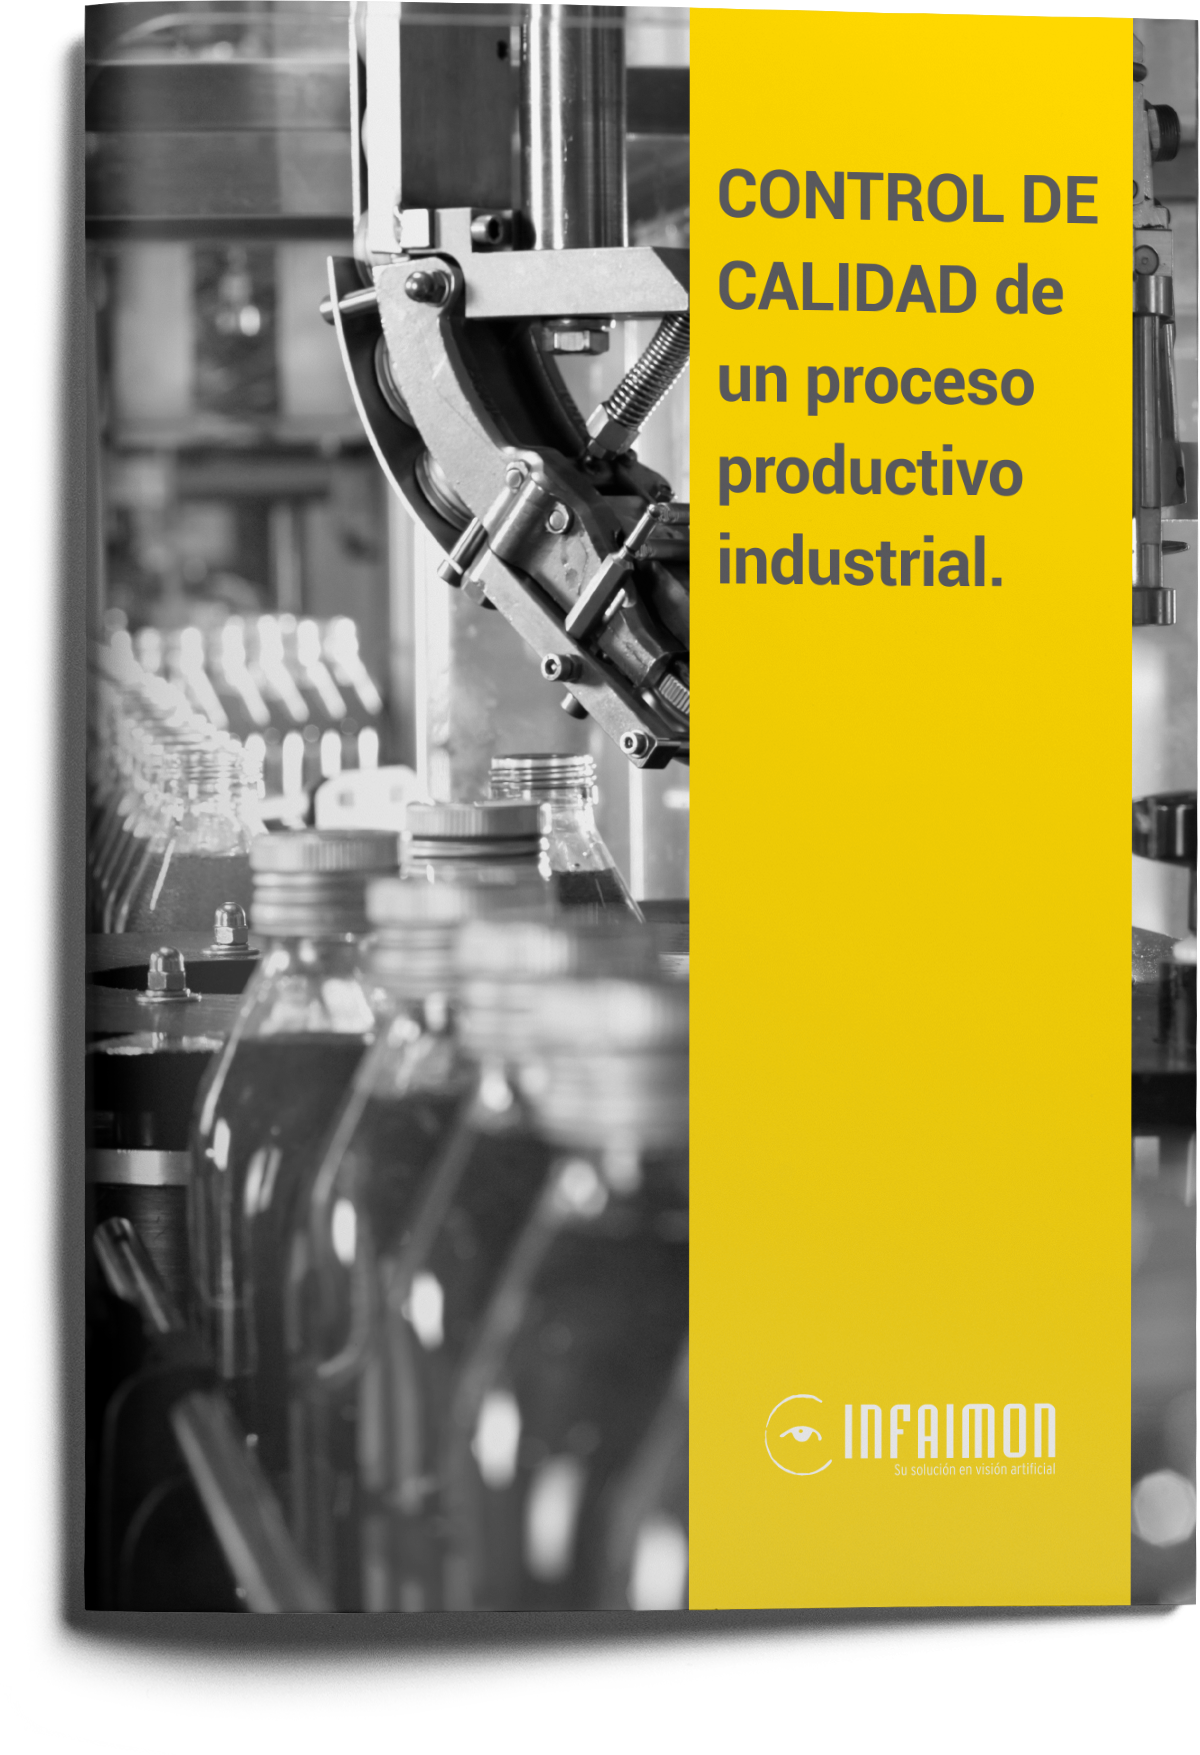 INFAIMON - Control de calidad de un proceso productivo industrial